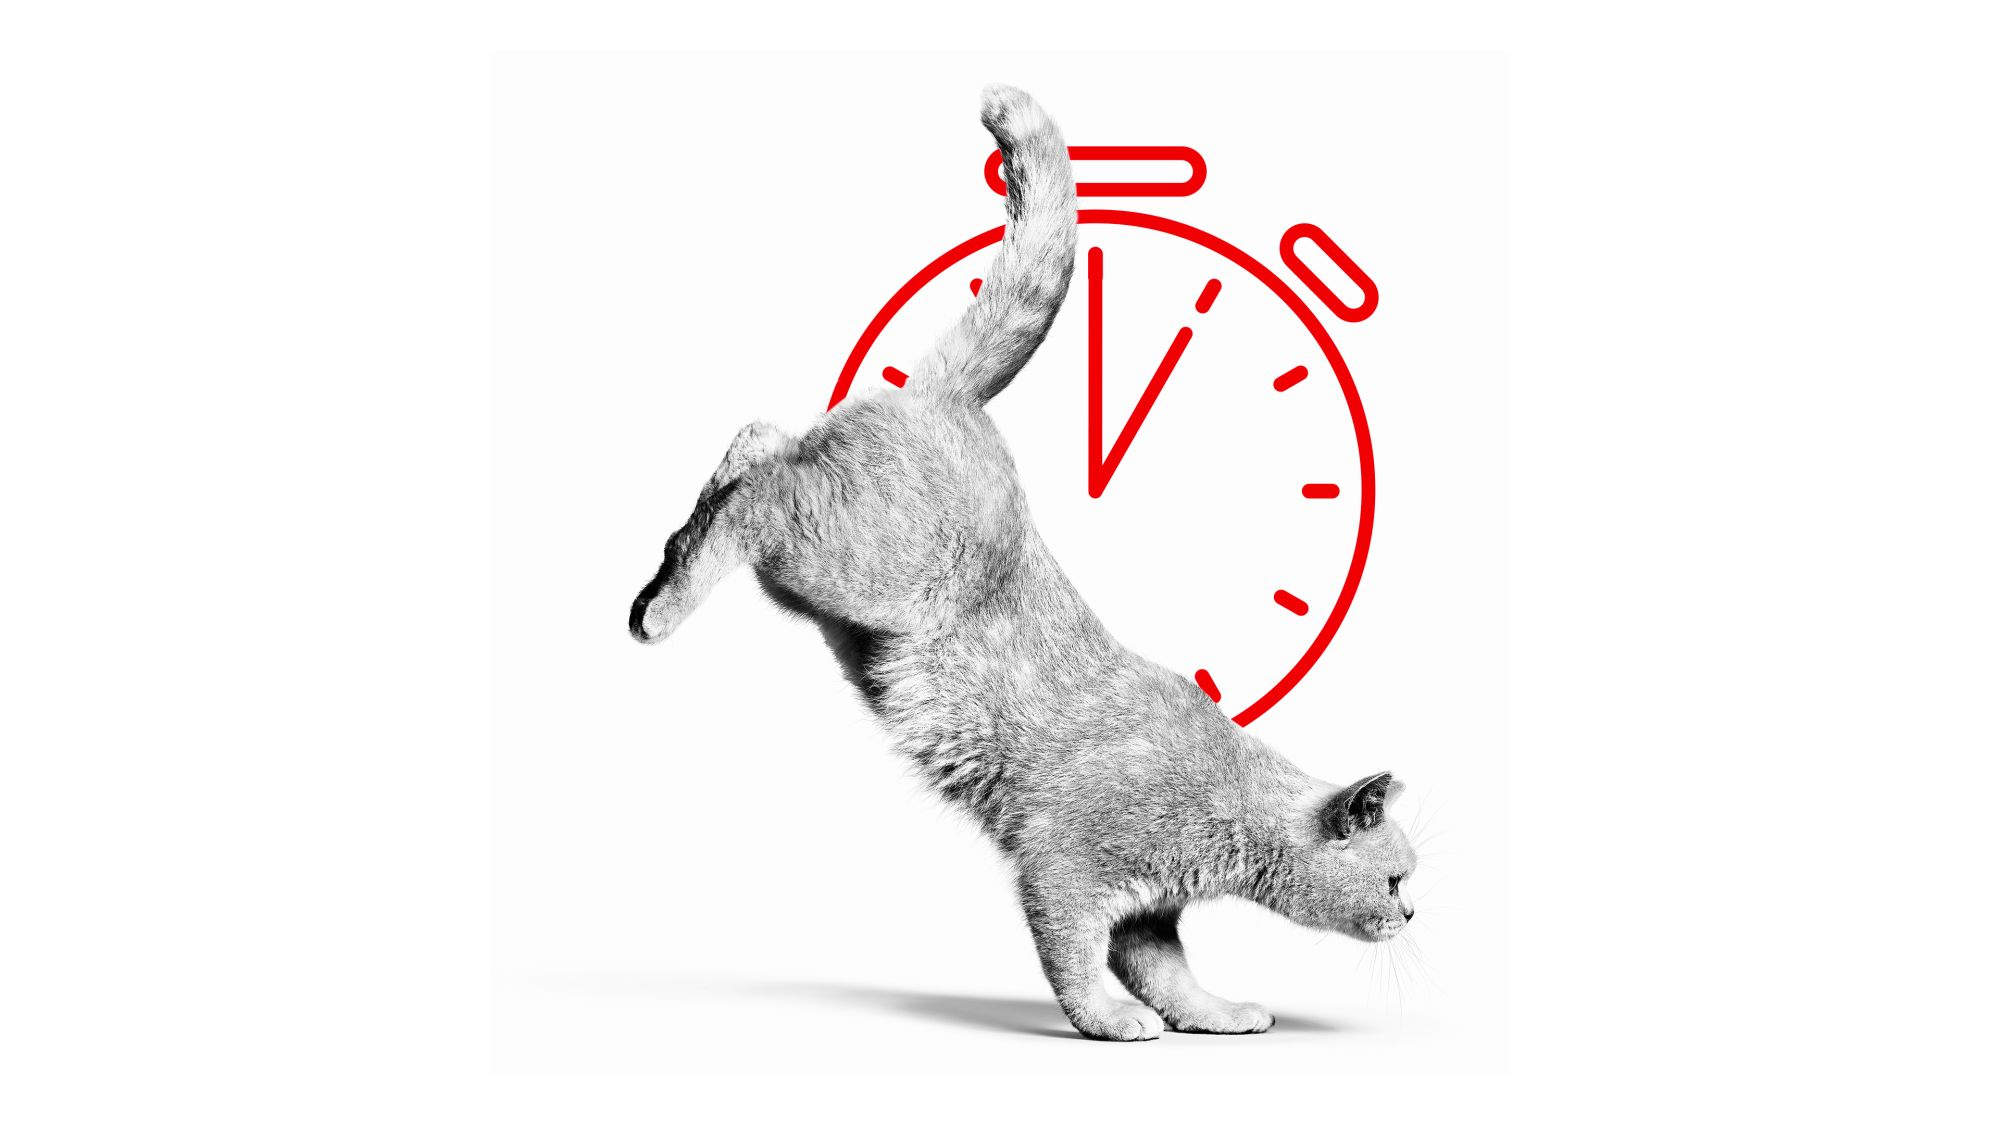 Brits Korthaar volwassen in zwart-wit springen met een stopwatch-illustratie erachter 